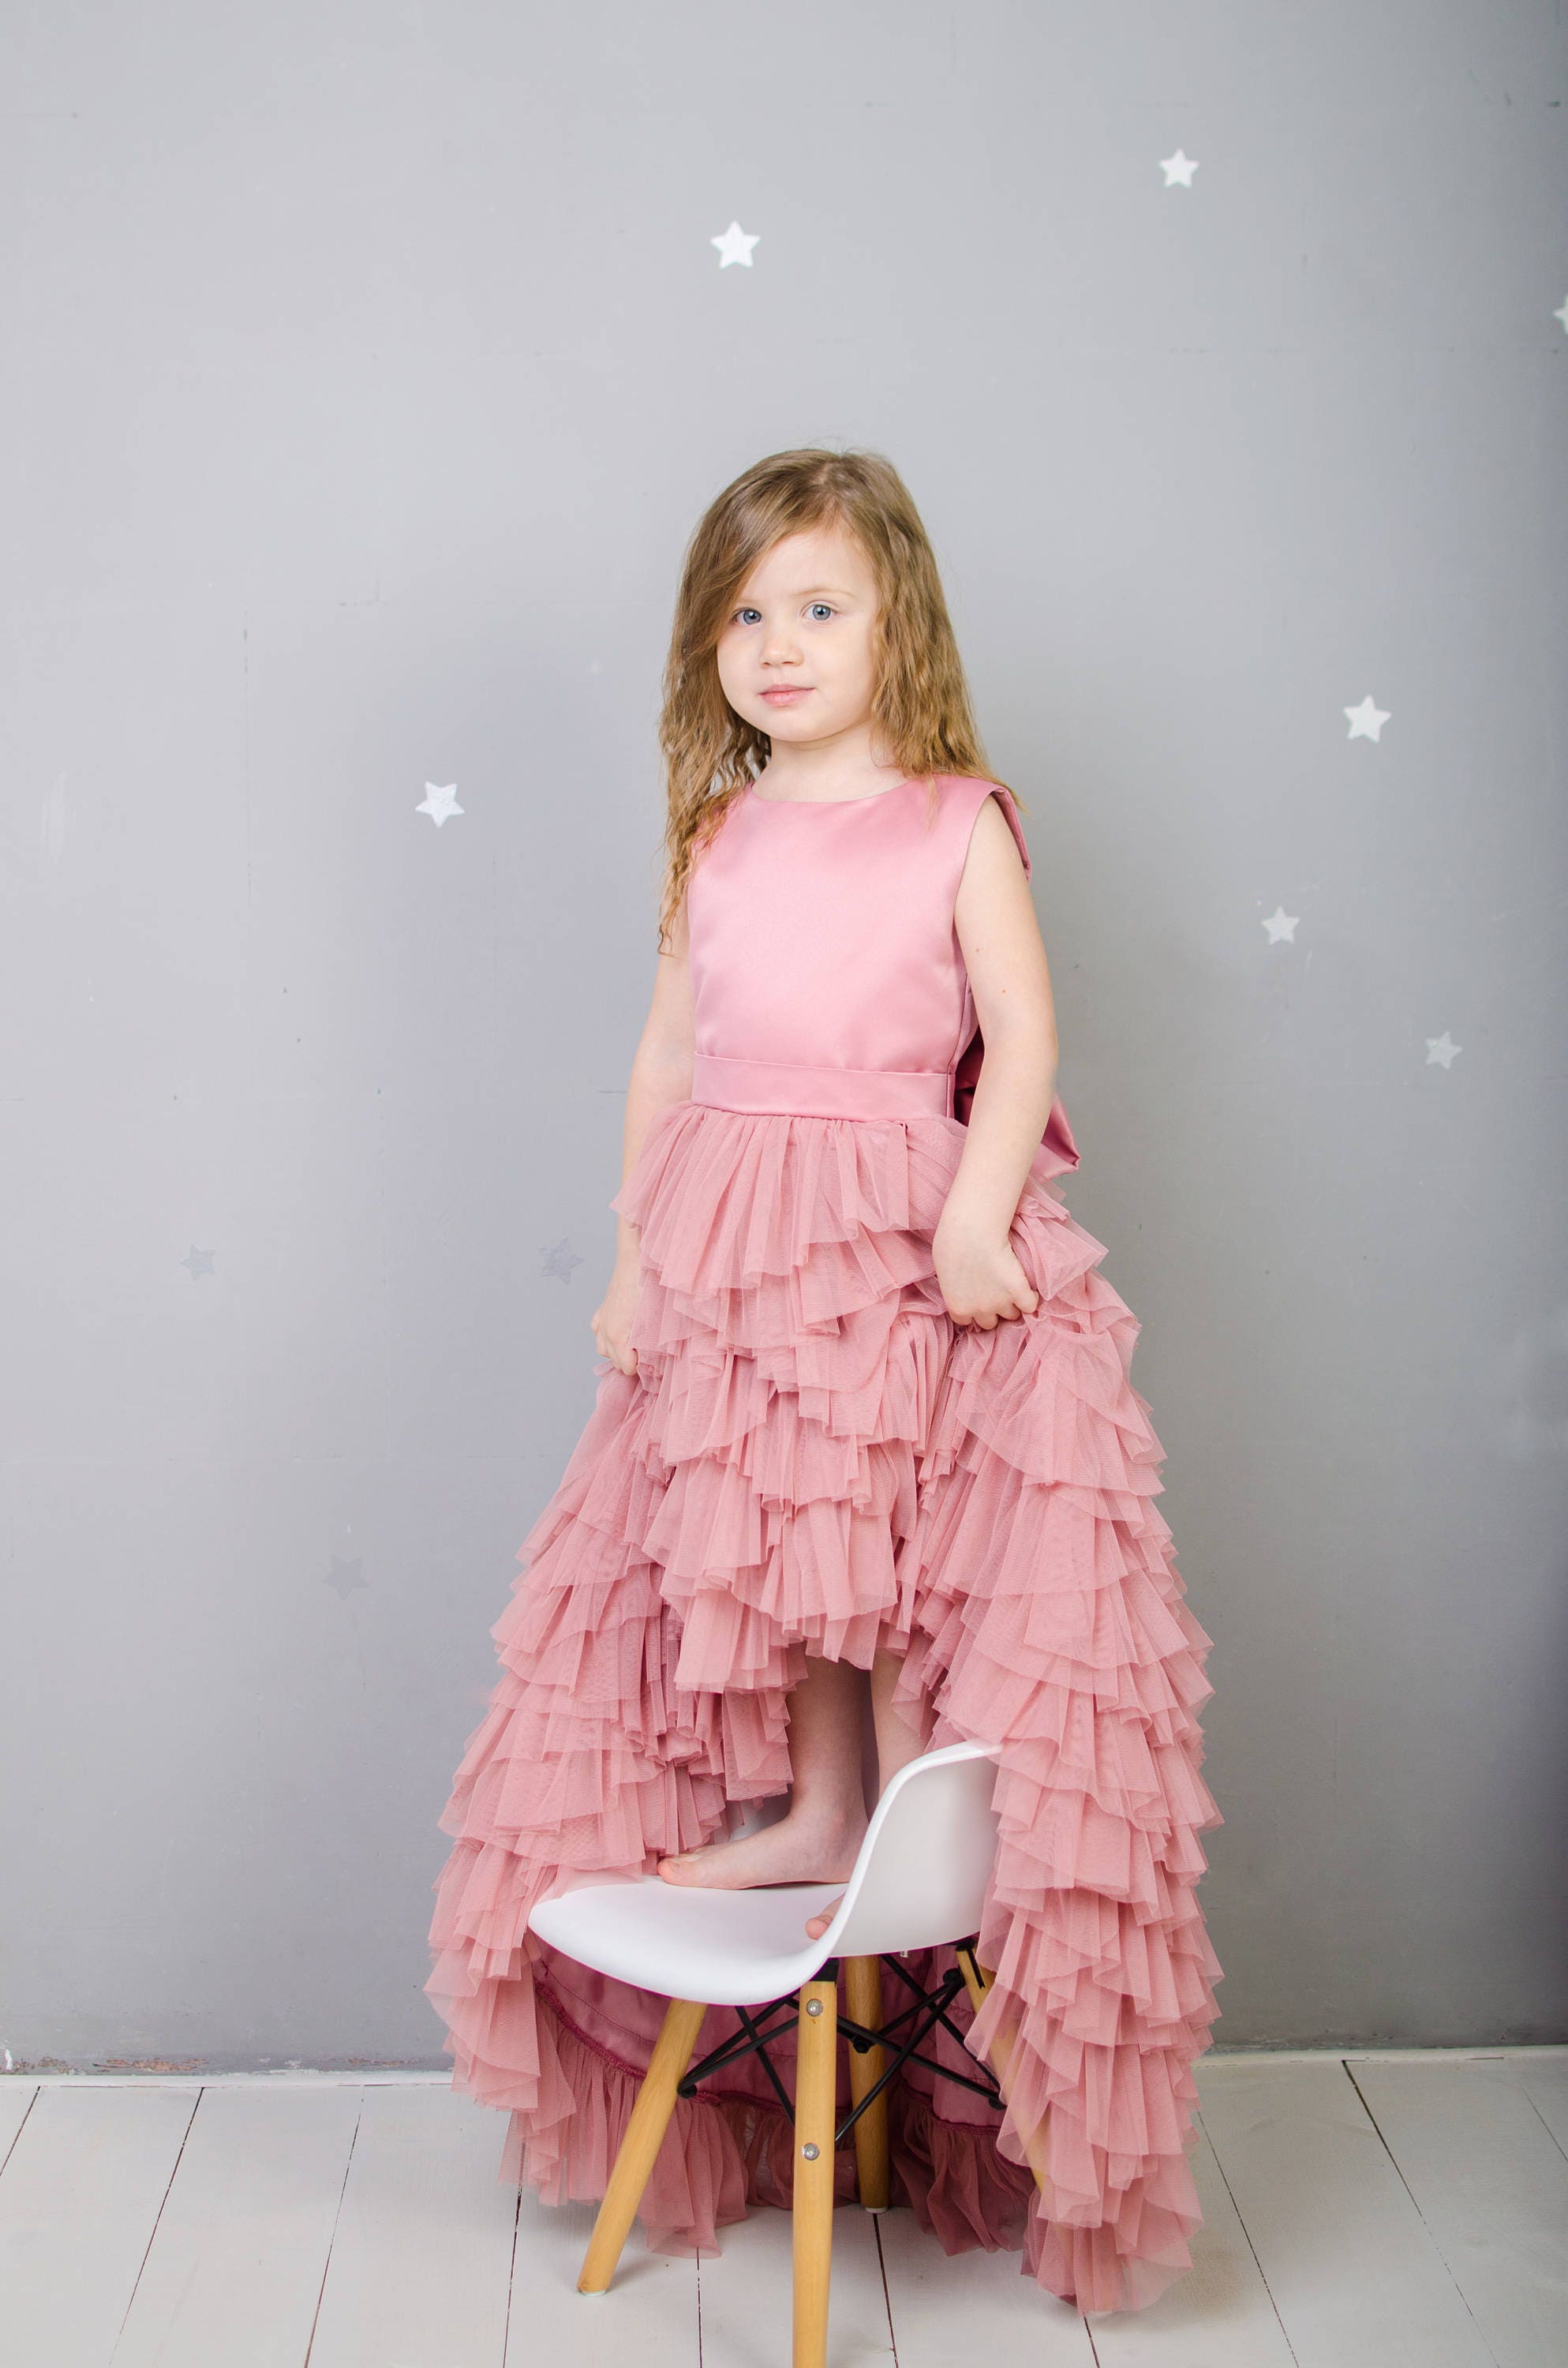 Matchinglook Hot Pink Dress Baby Dress Pageant Dress Tulle Dress Flower Girl Dress Birthday Dress Toddler Dress Hot Pink Wedding Dress Girl Tutu Dress